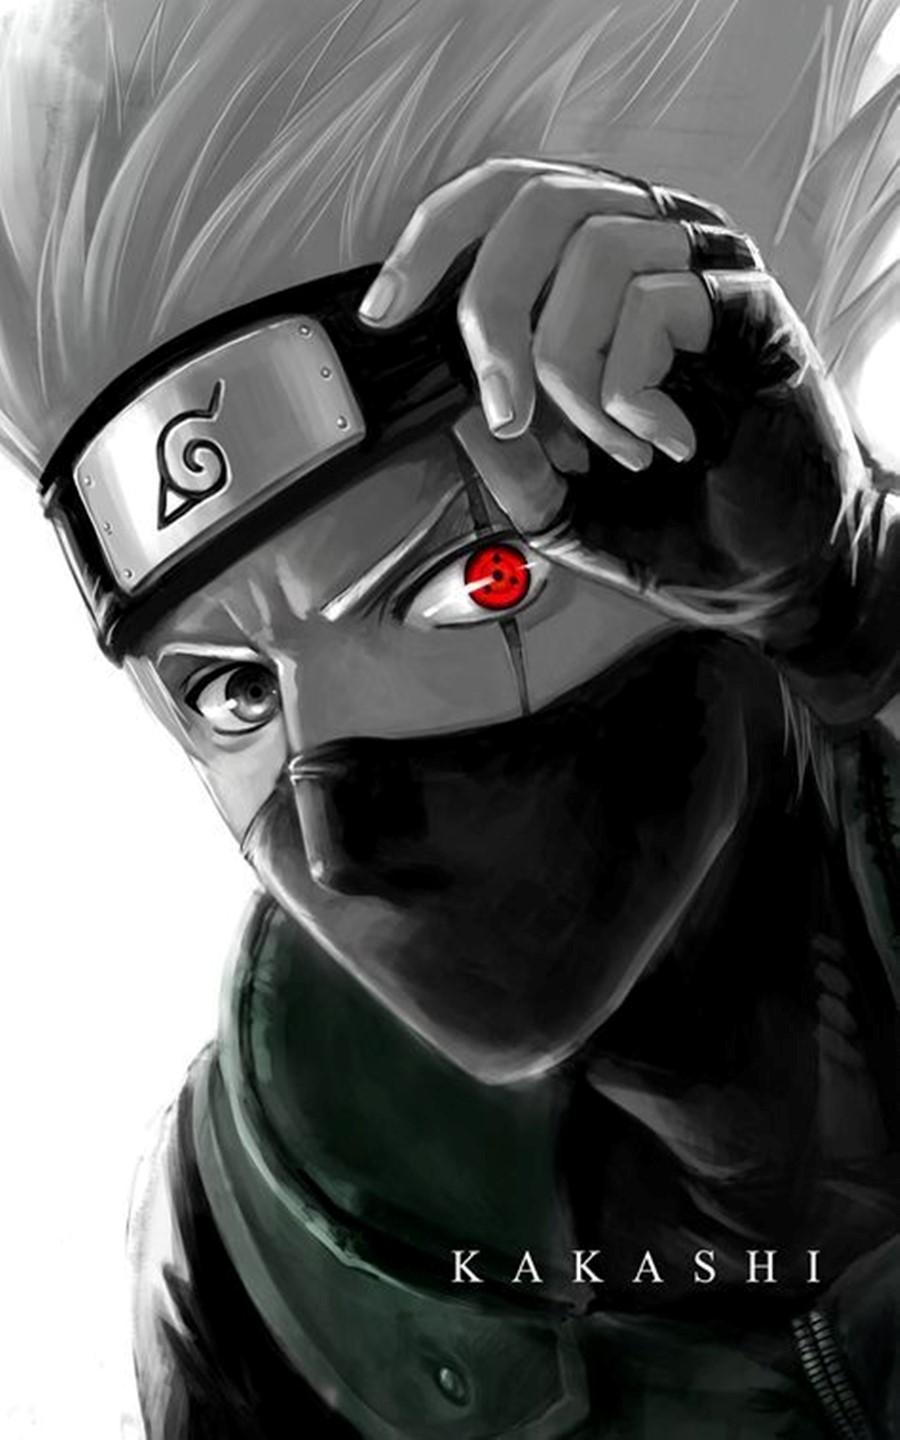 Hình ảnh Kakashi ngầu nhất - Ninja sao chép thần thái